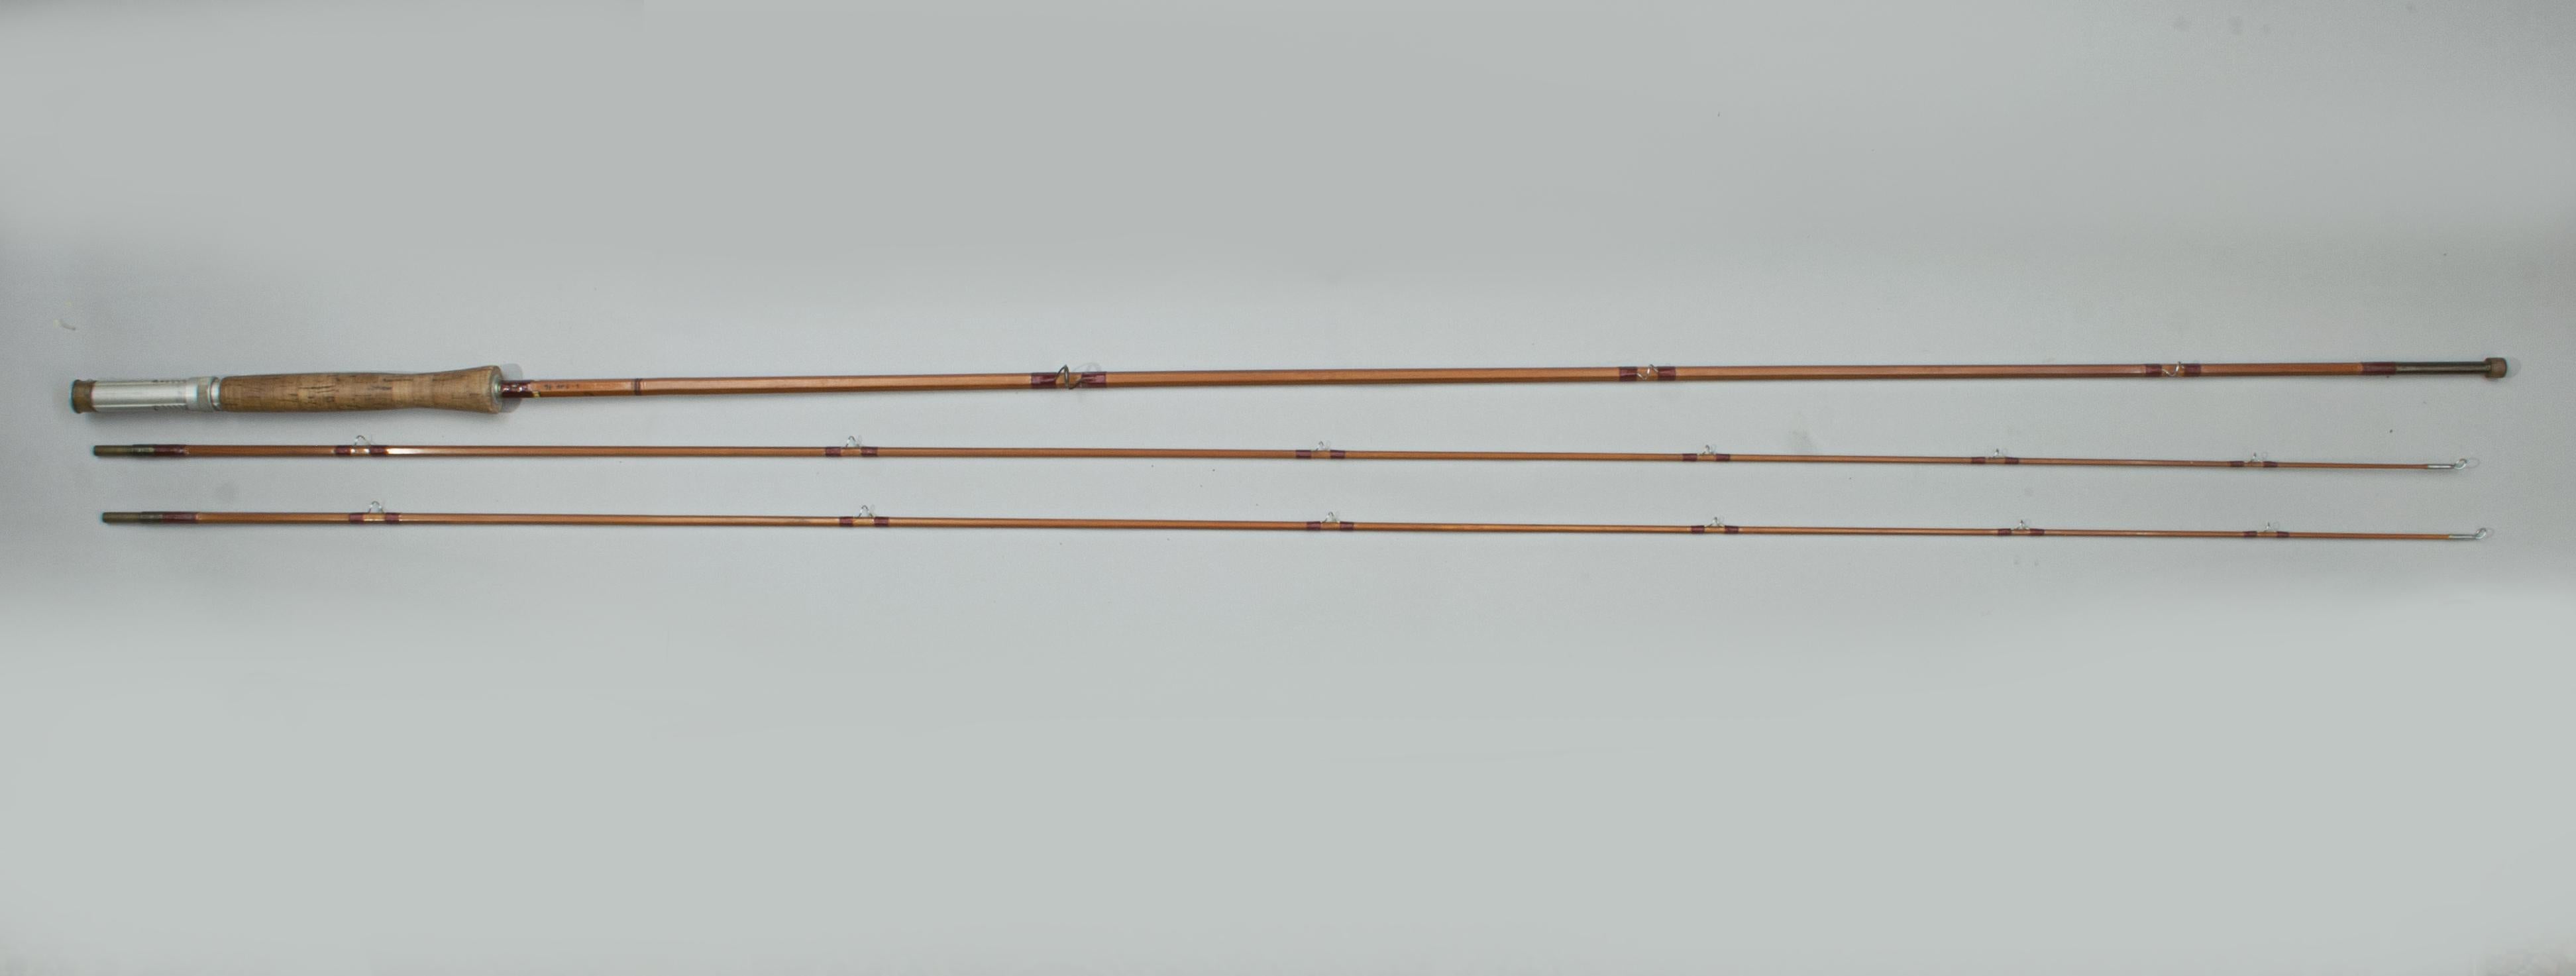 fishing rod cane